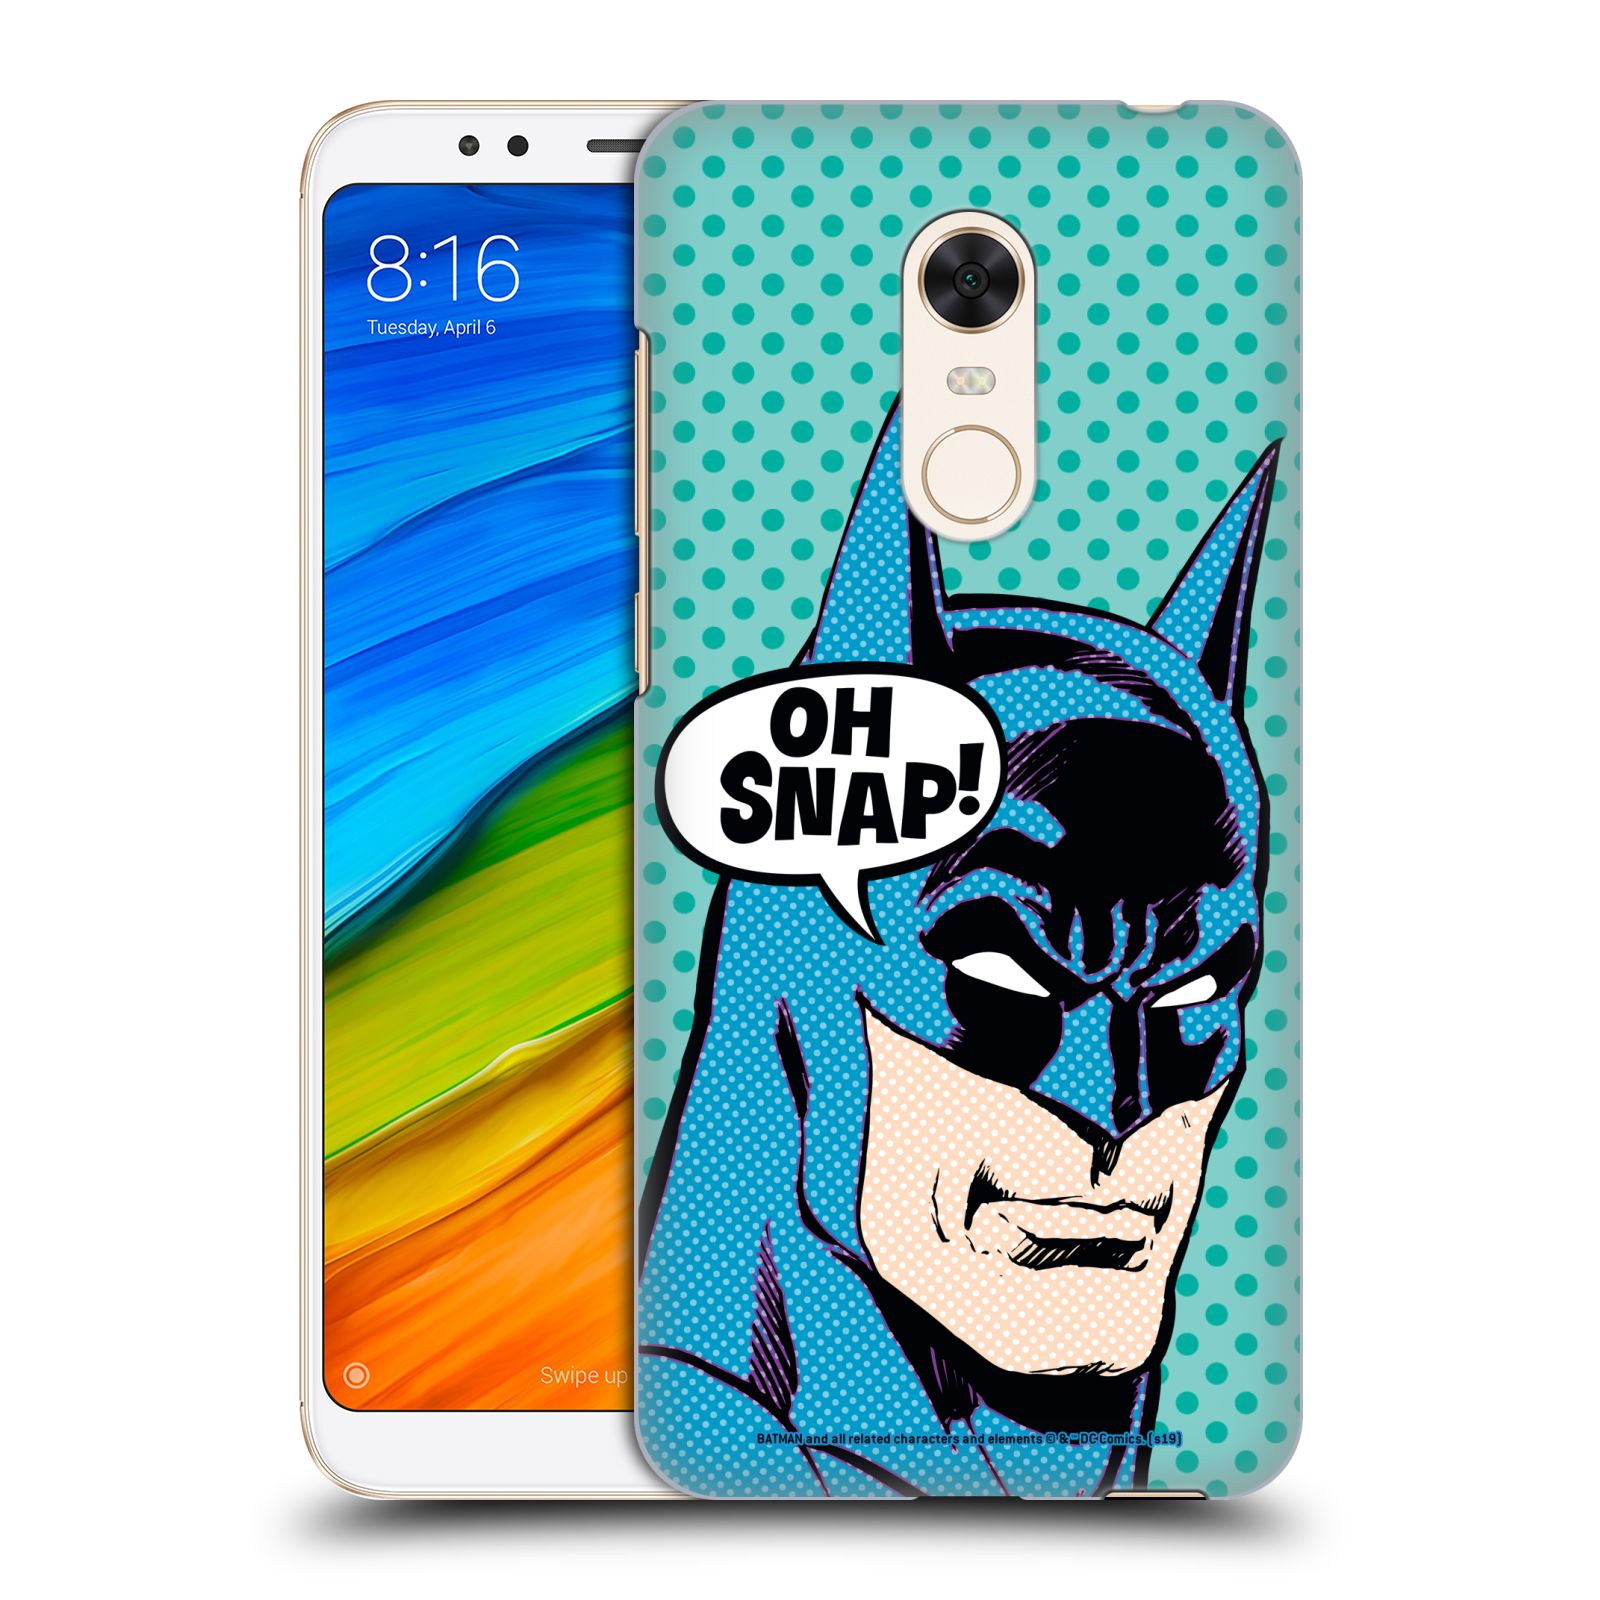 Pouzdro na mobil Xiaomi Redmi 5 PLUS (REDMI 5+) - HEAD CASE - DC komix Batman Pop Art tvář